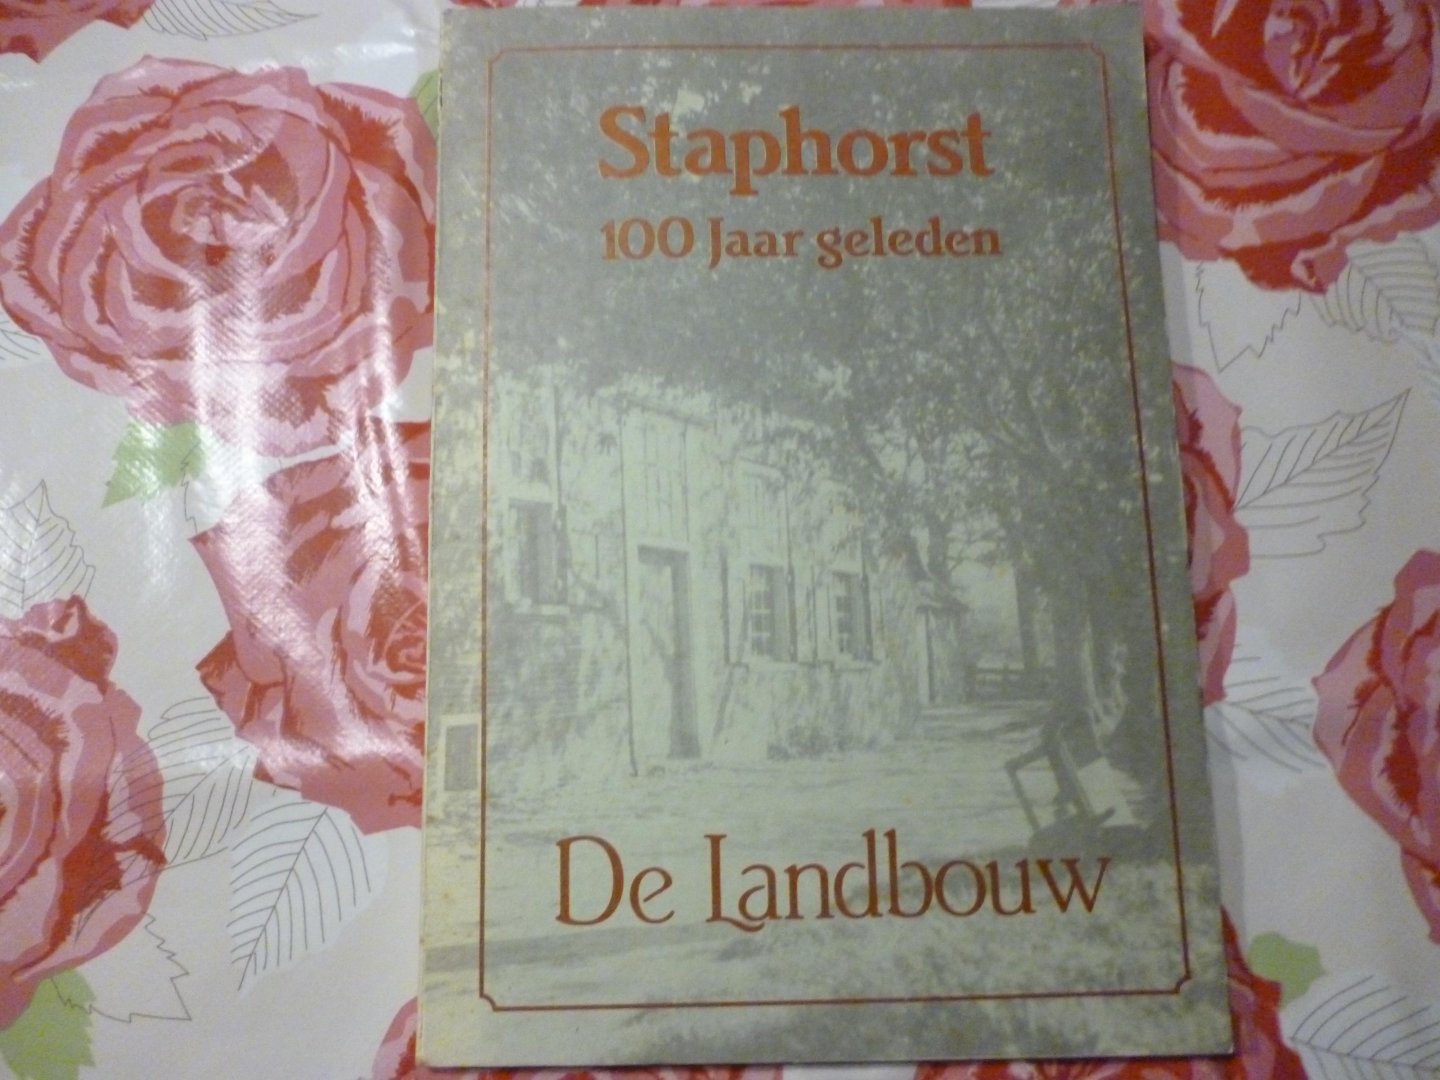 Baron van Dedem van de Rollecate - Staphorst 100 jaar geleden